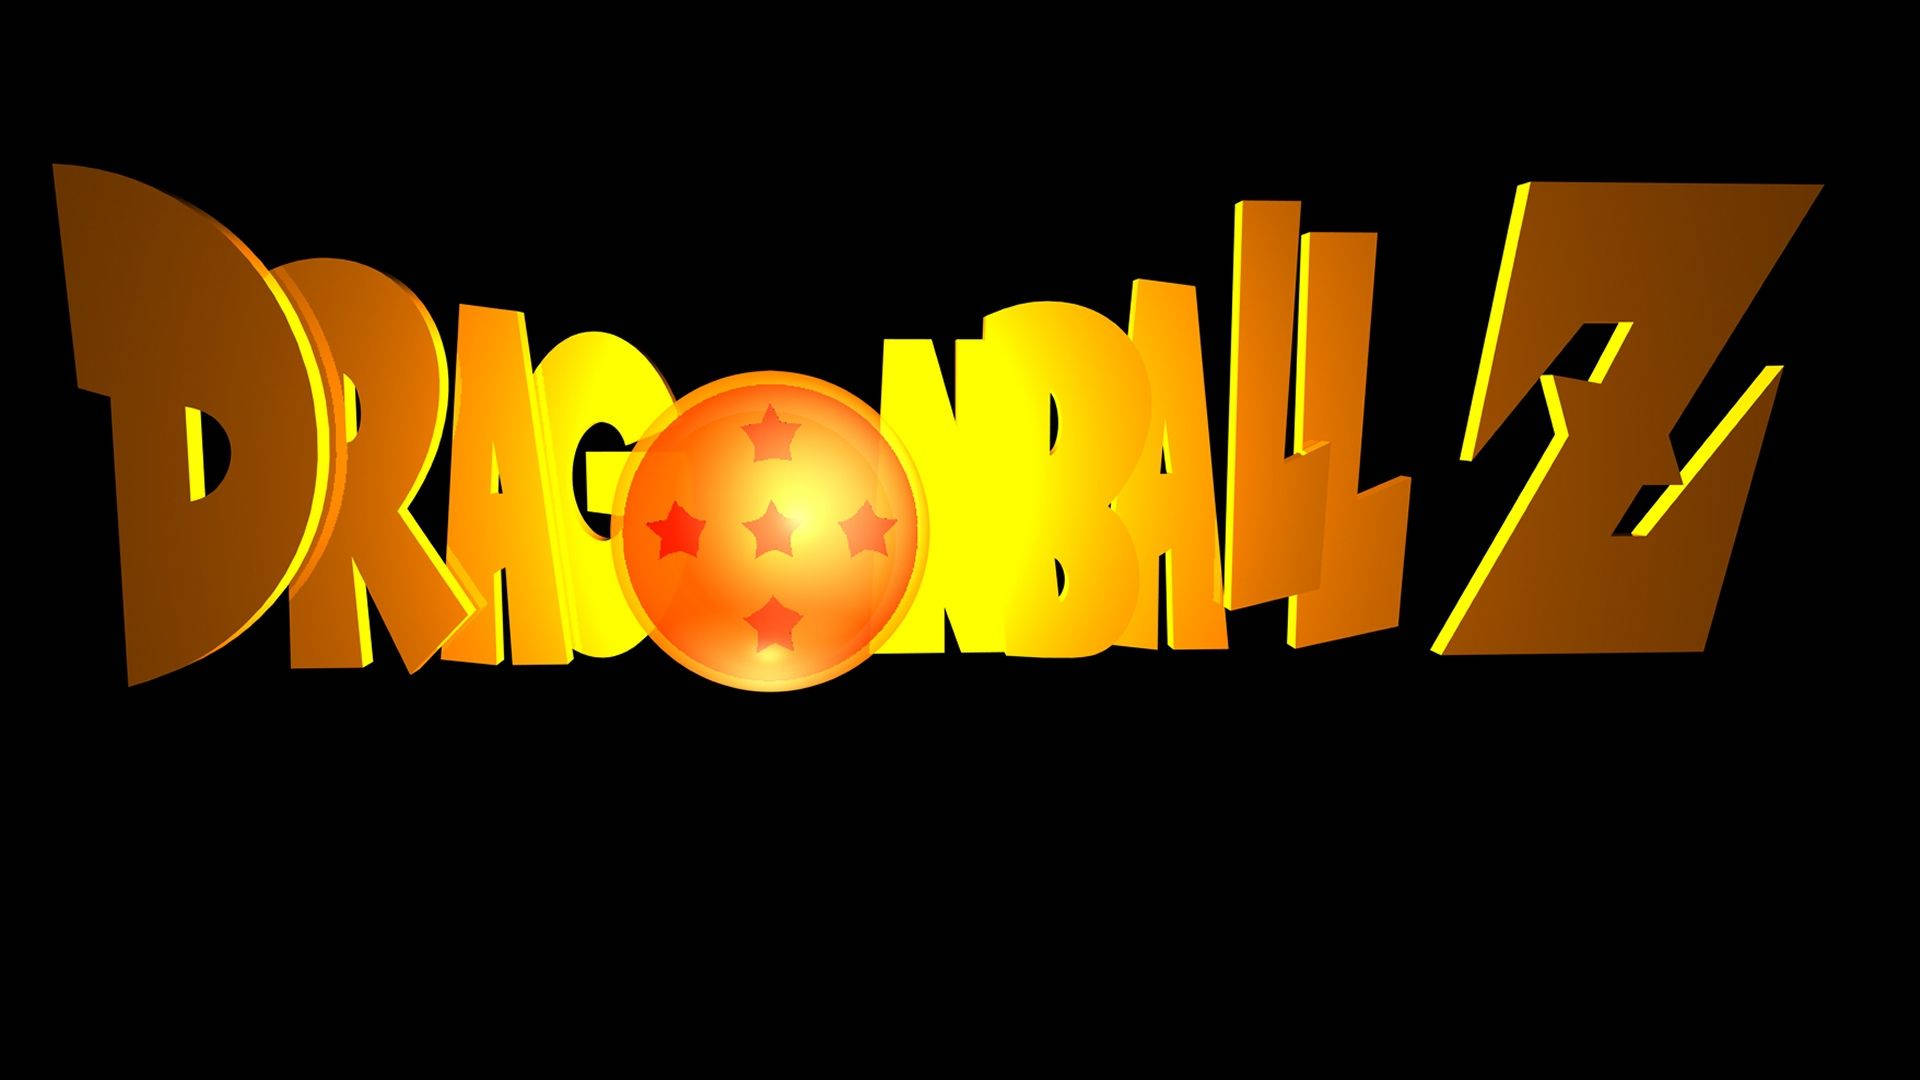 Dragonball Z Logo, Ein Ikonisches Symbol Der 90er Jahre. Wallpaper